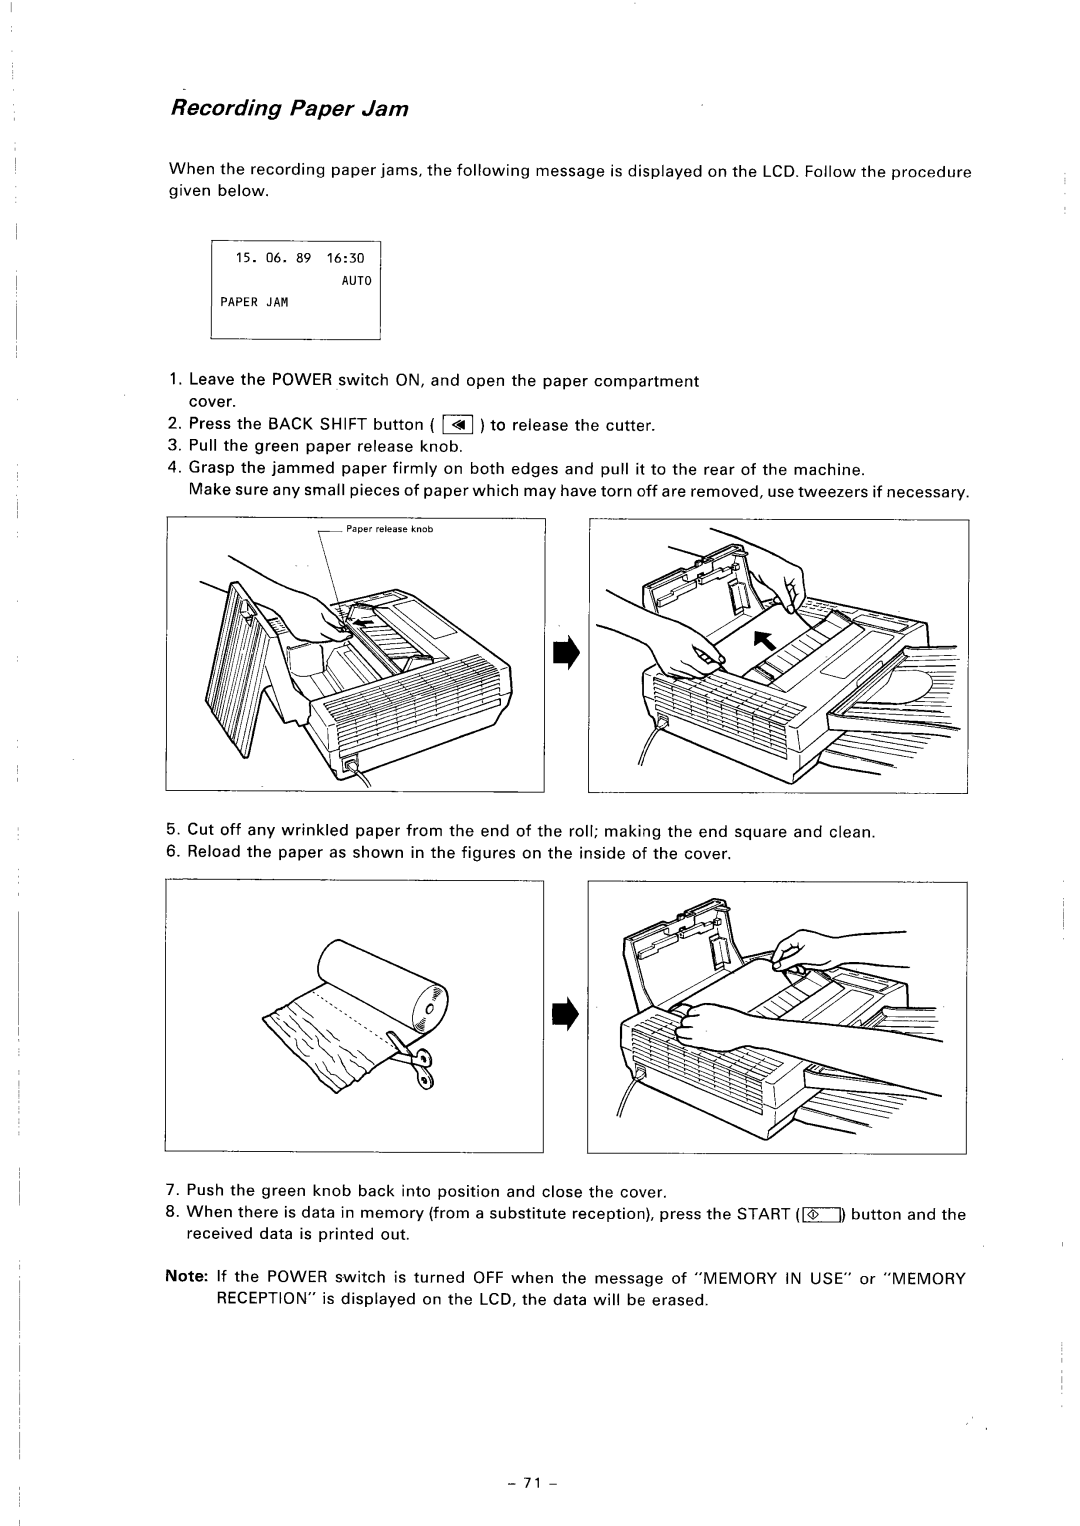 Toshiba TF 251 manual 